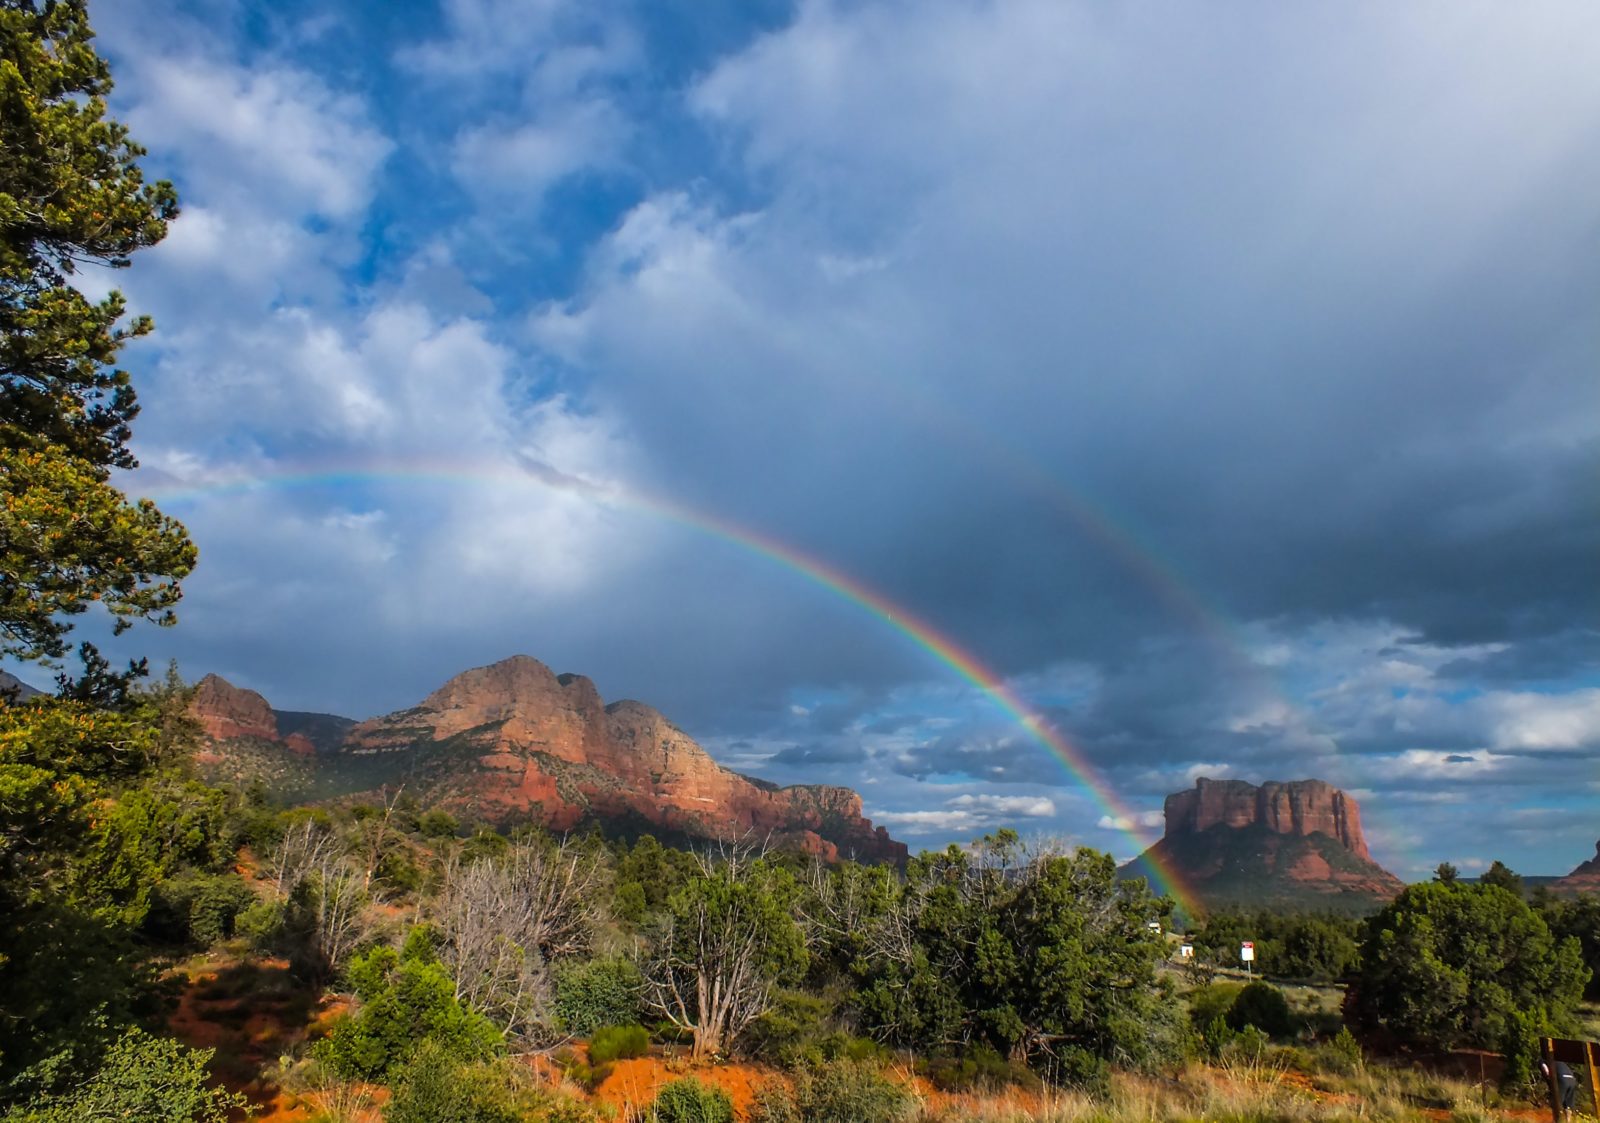 Rainbow over Arizona mountain range